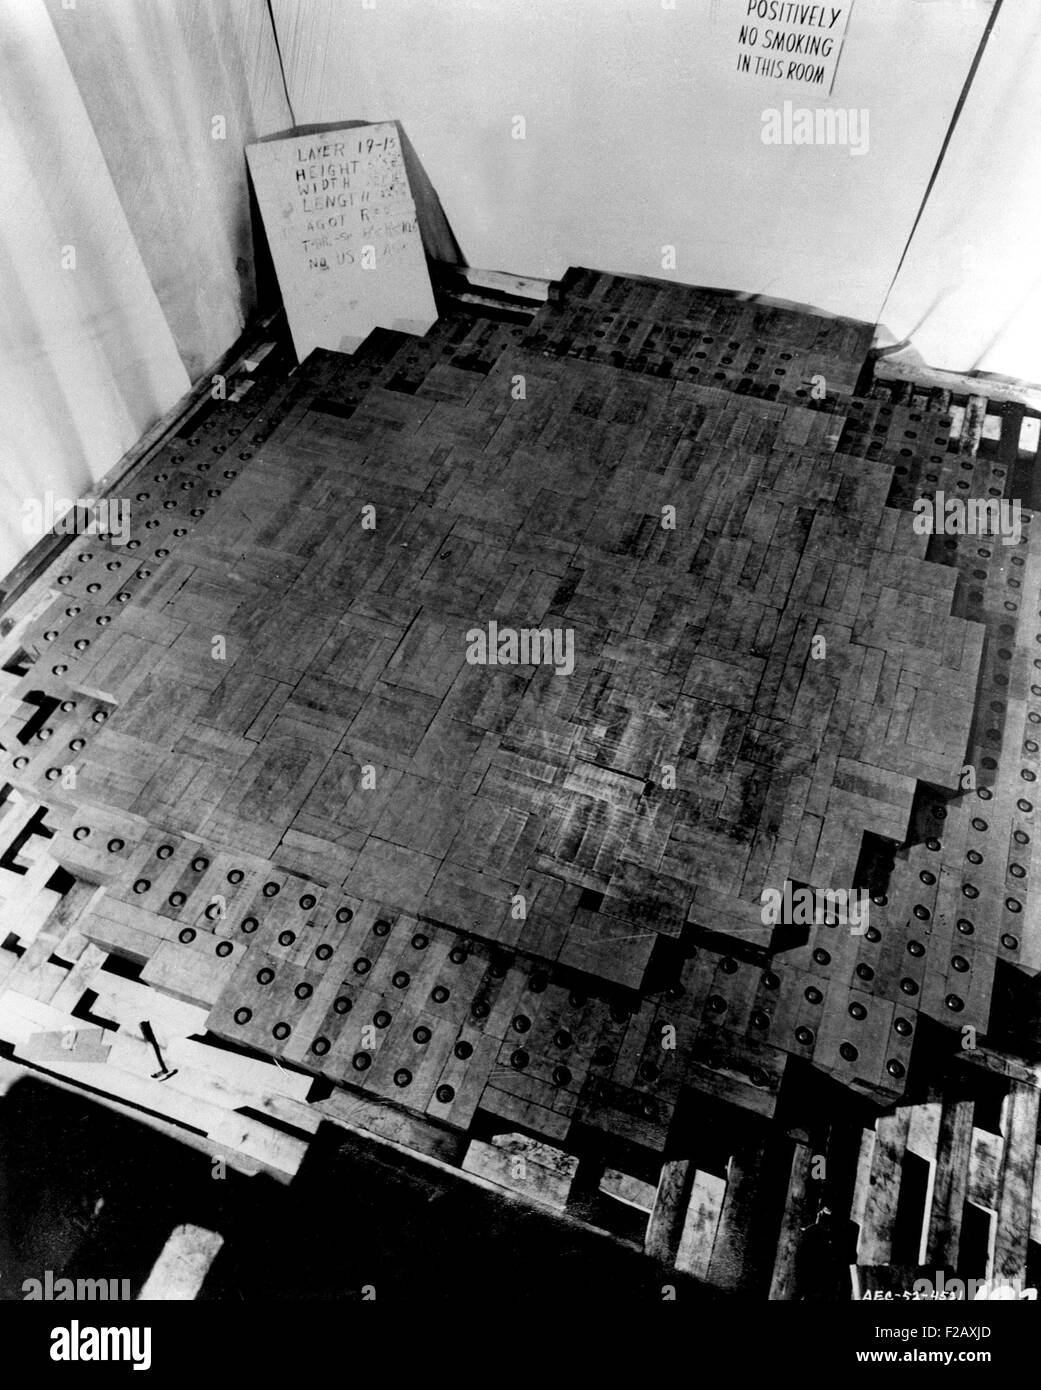 Foto gemacht während des Baus des Chicago Pile-1 (CP-1), der erste Kernreaktor. Es war ein Haufen von Uran-Pellets und Graphitblöcke, die eine kritische Masse an spaltbarem Material mit Steuerstäbe enthalten. (BSLOC 2015 2 21) Stockfoto